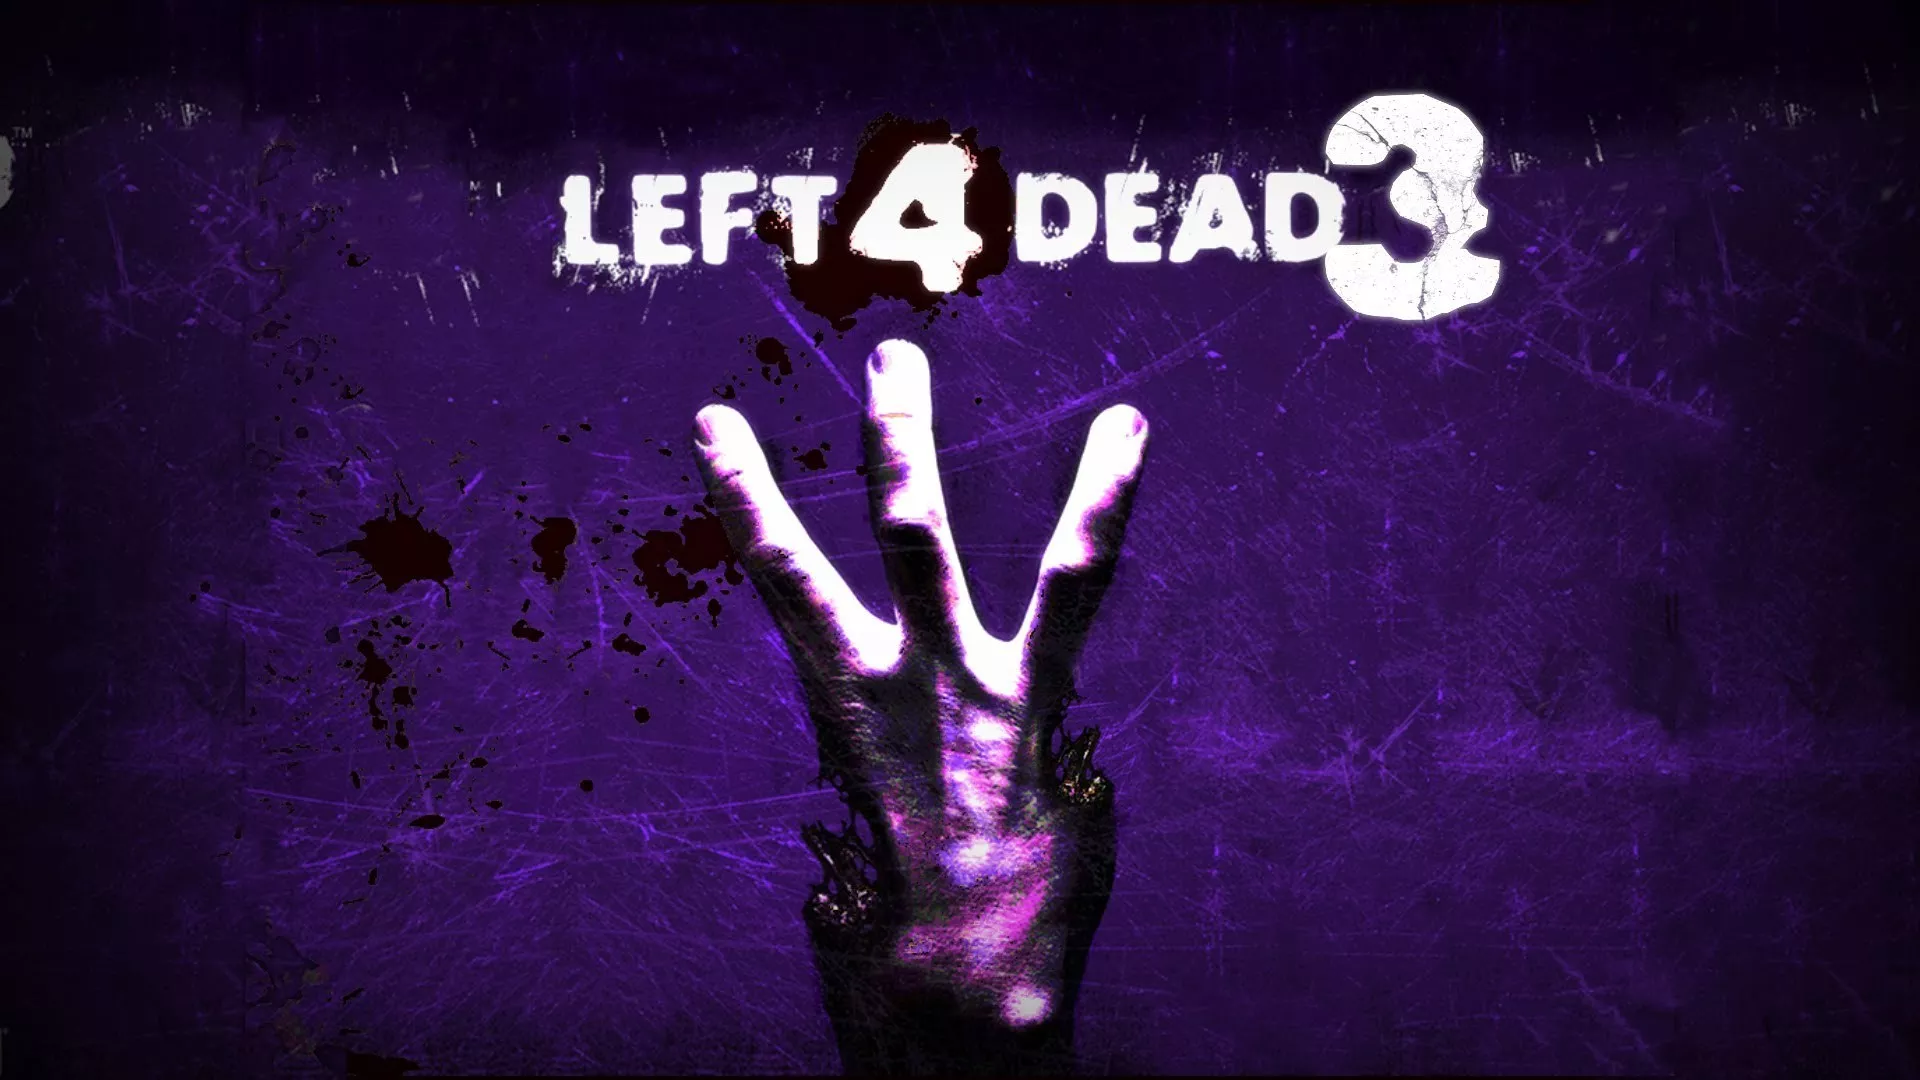 Left 4 Dead 3 Wallpaper - Left 4 Dead 3 Hd - HD Wallpaper 